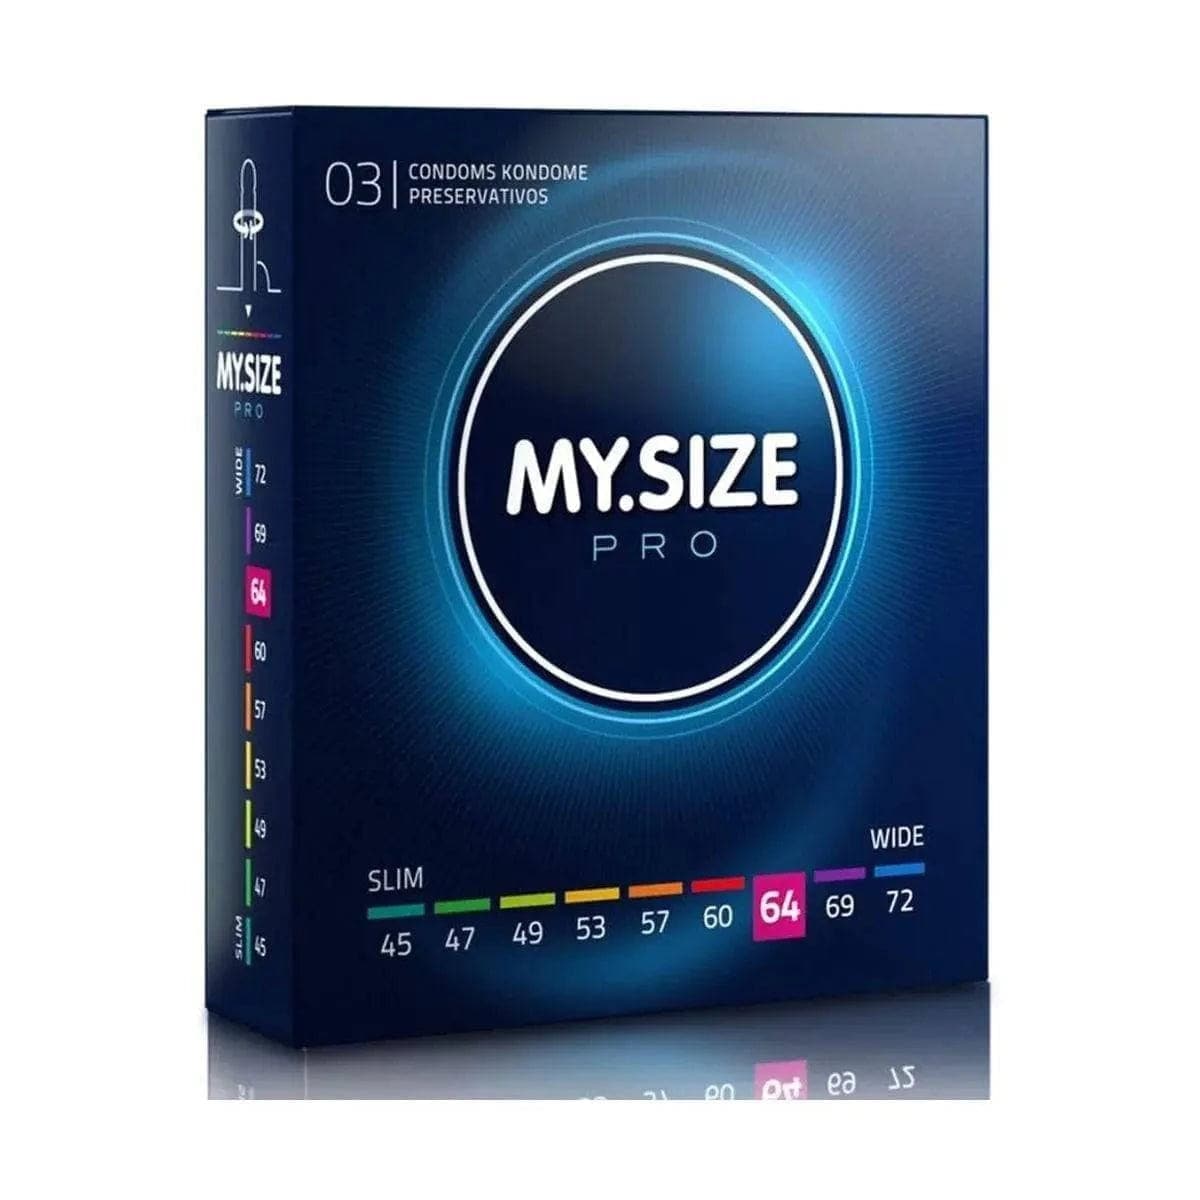 Preservativos XXL - My.Size 64mm - Melhor Ajuste e Sensibilidade  My.Size 3 preservativos  